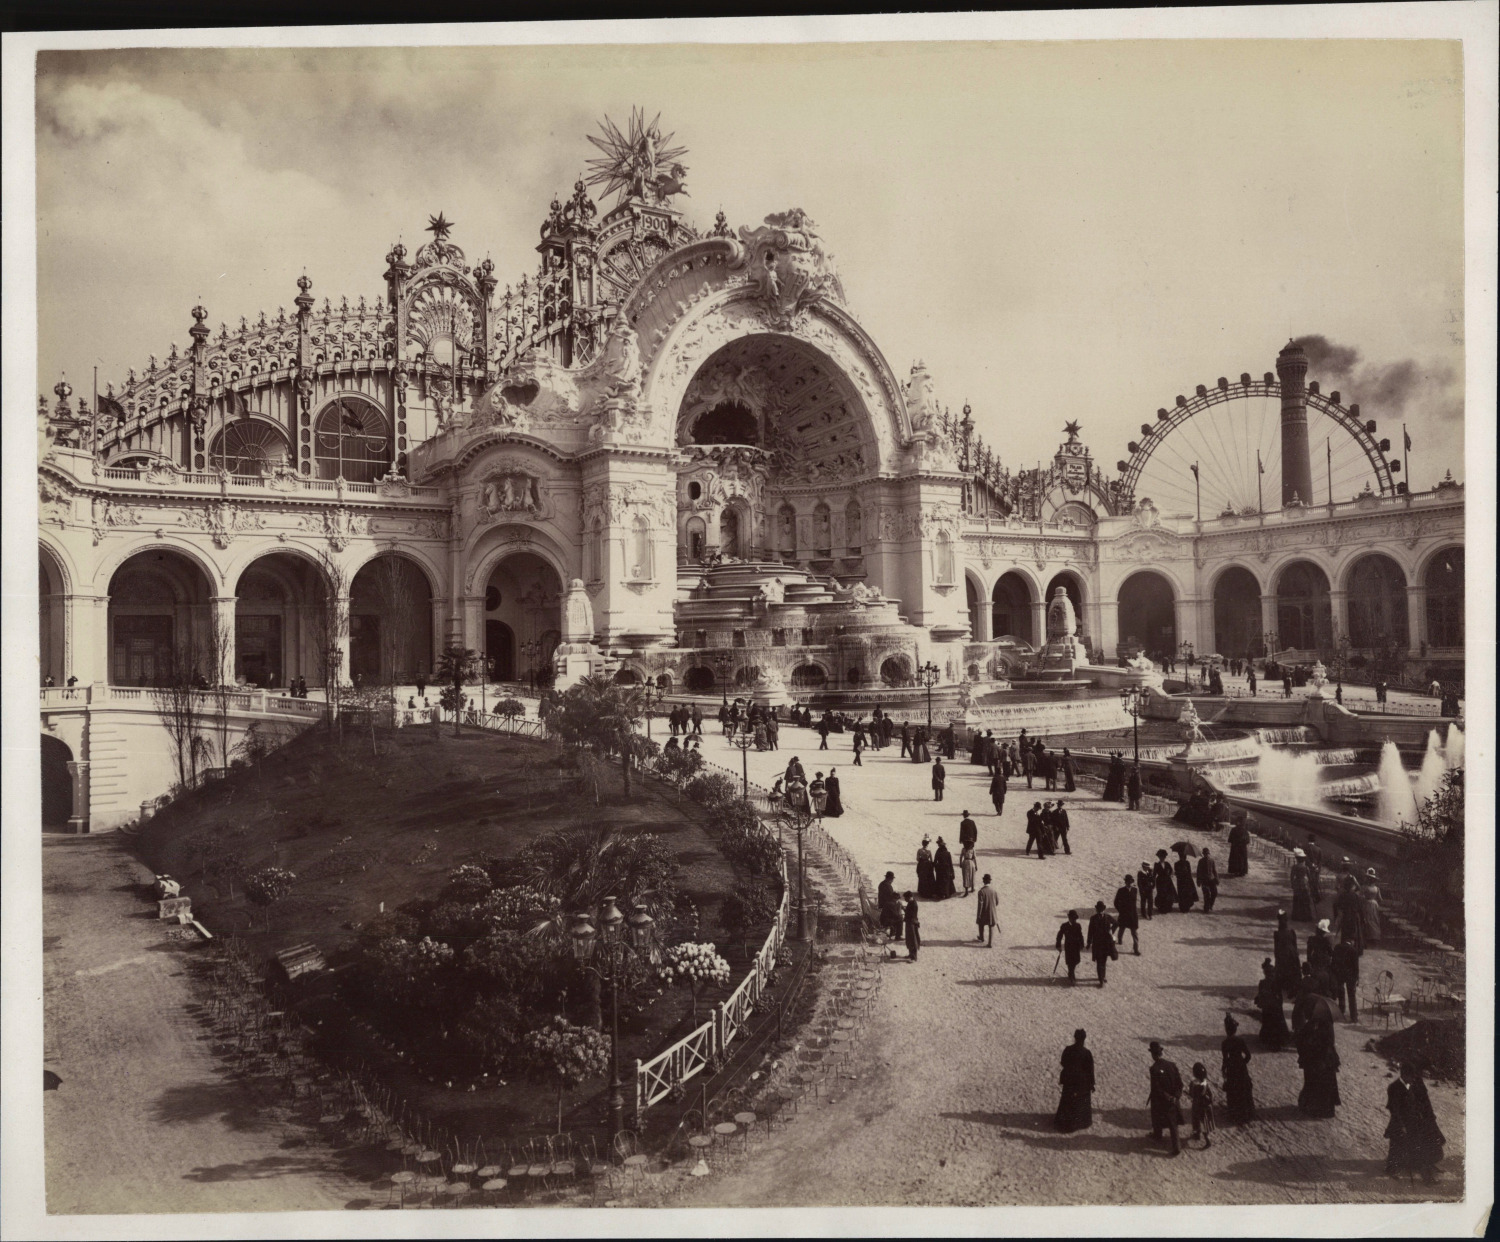 France, Paris, 1900 Universal Exhibition, Le Château d'Eau vintage pri